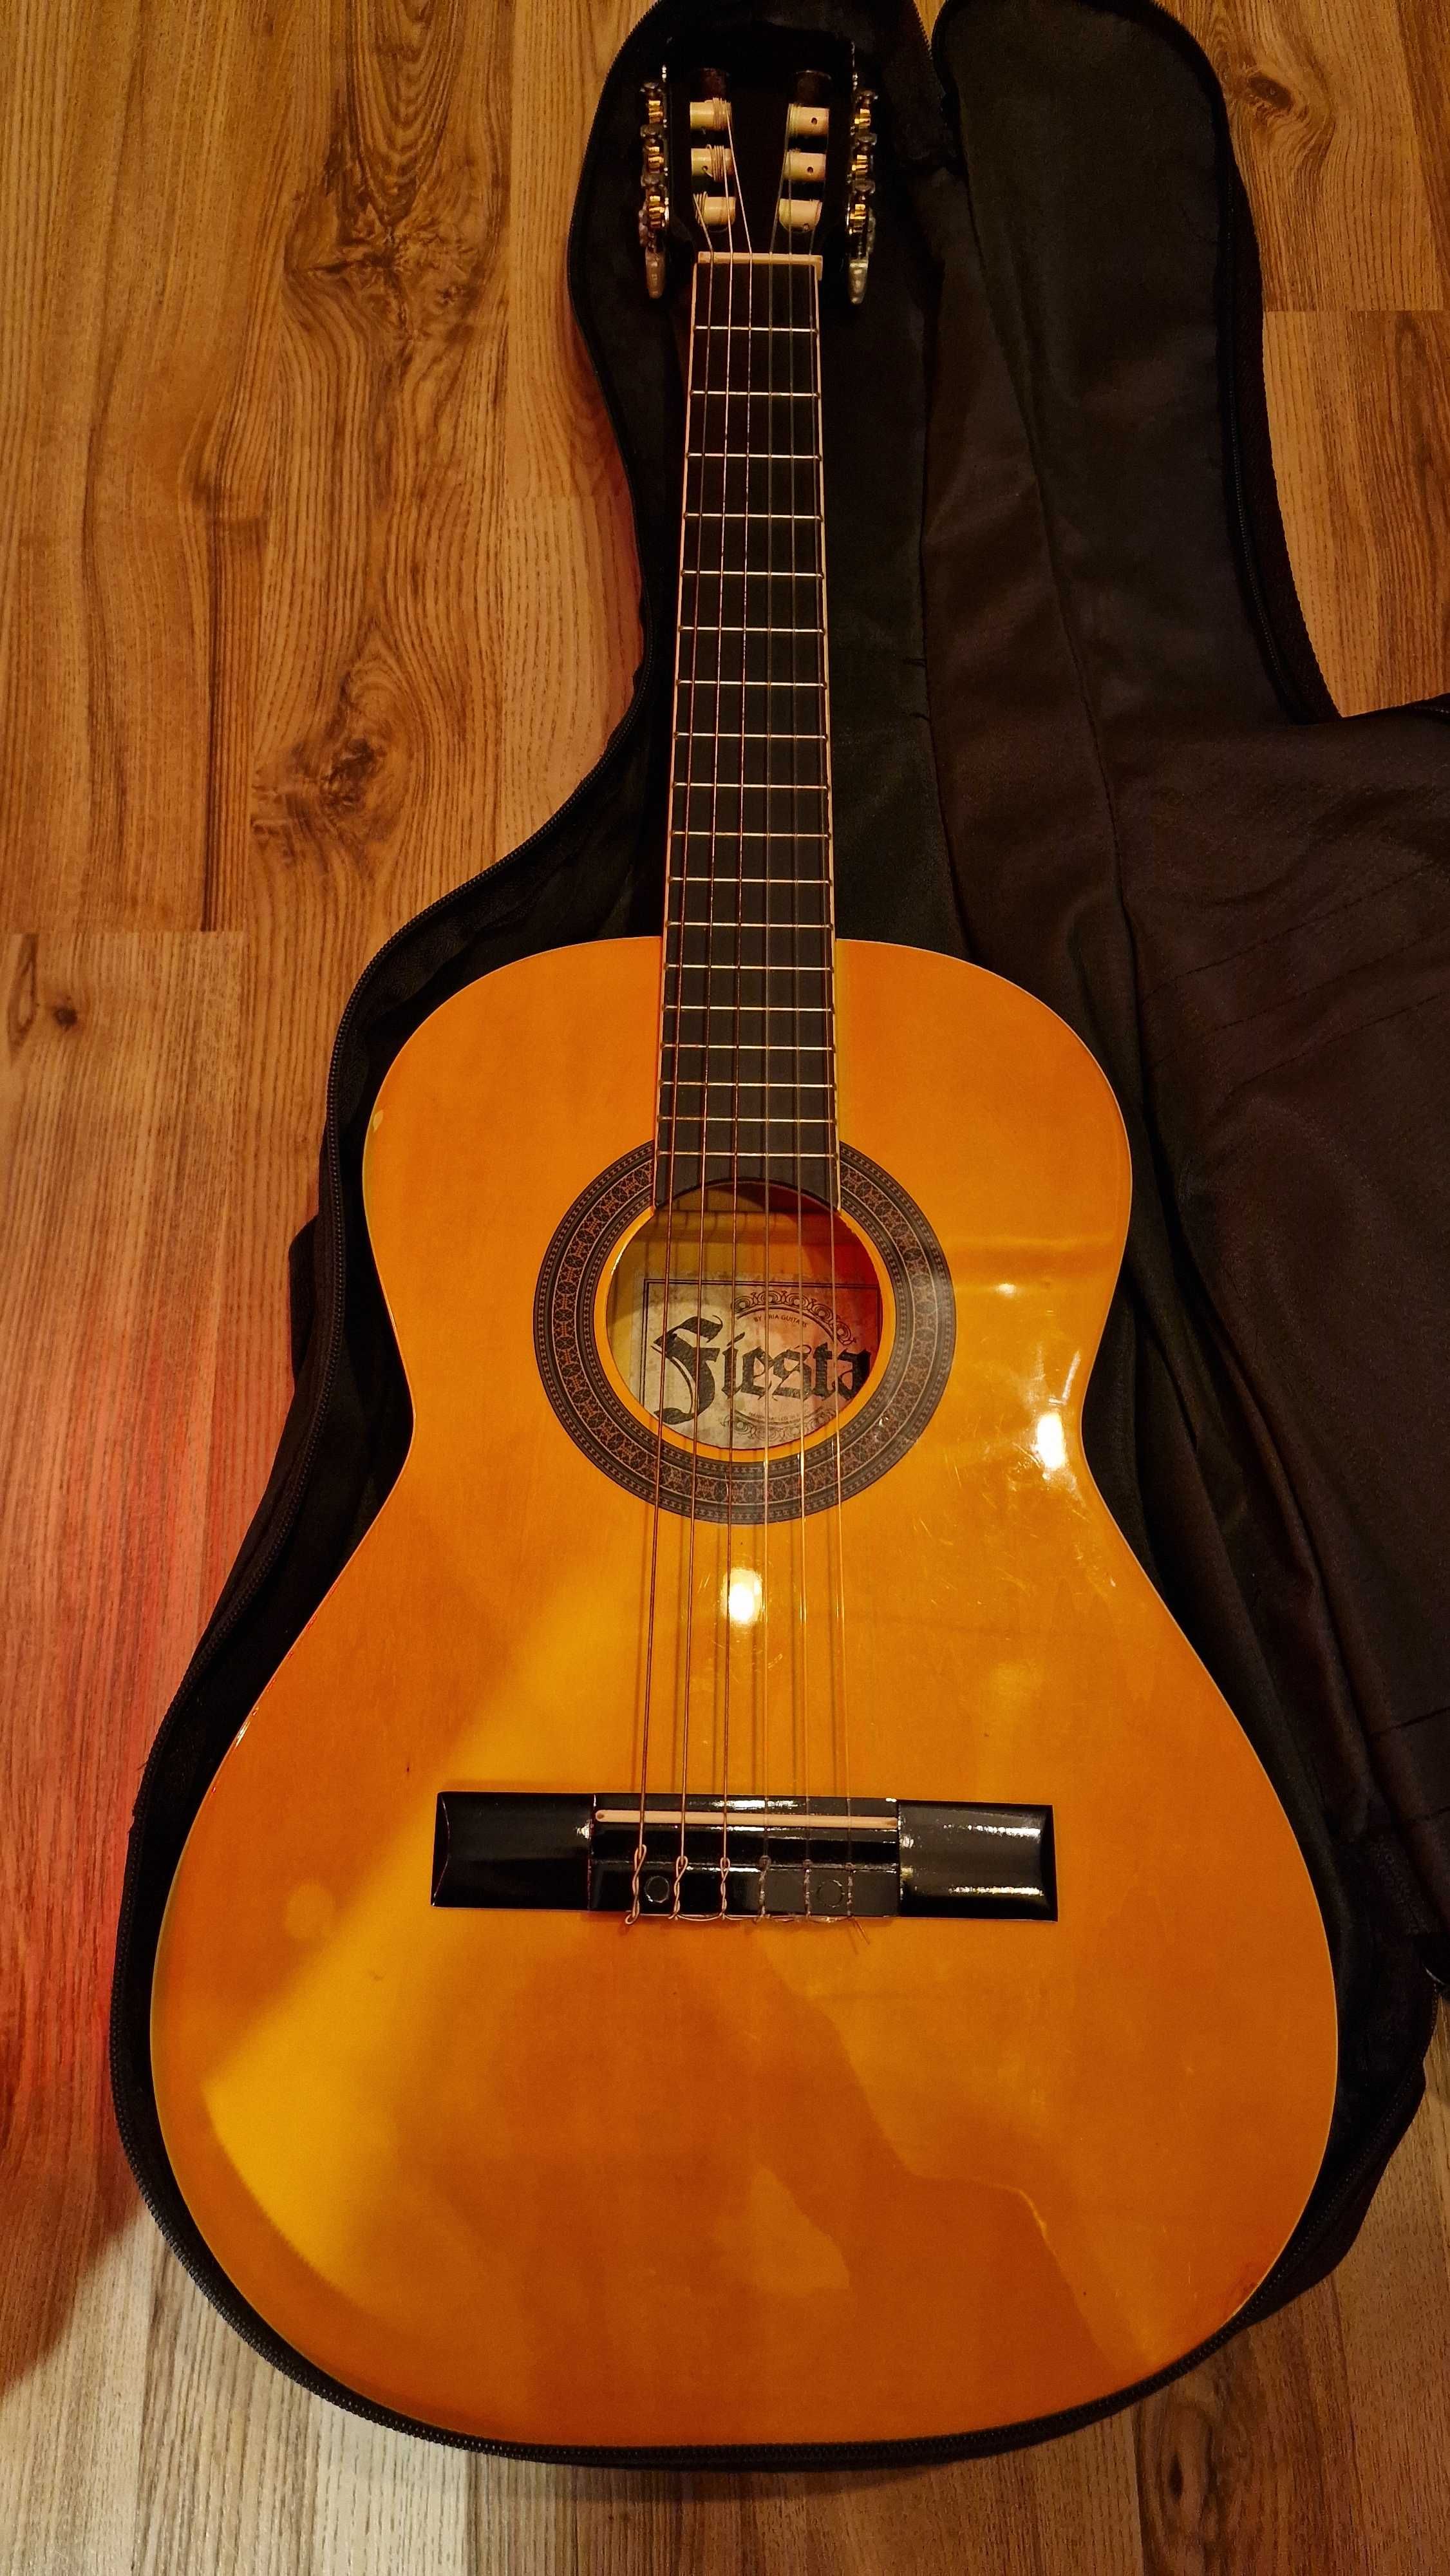 Aria FST-200-53 N gitara klasyczna 1/2 Pokrowiec w cenie